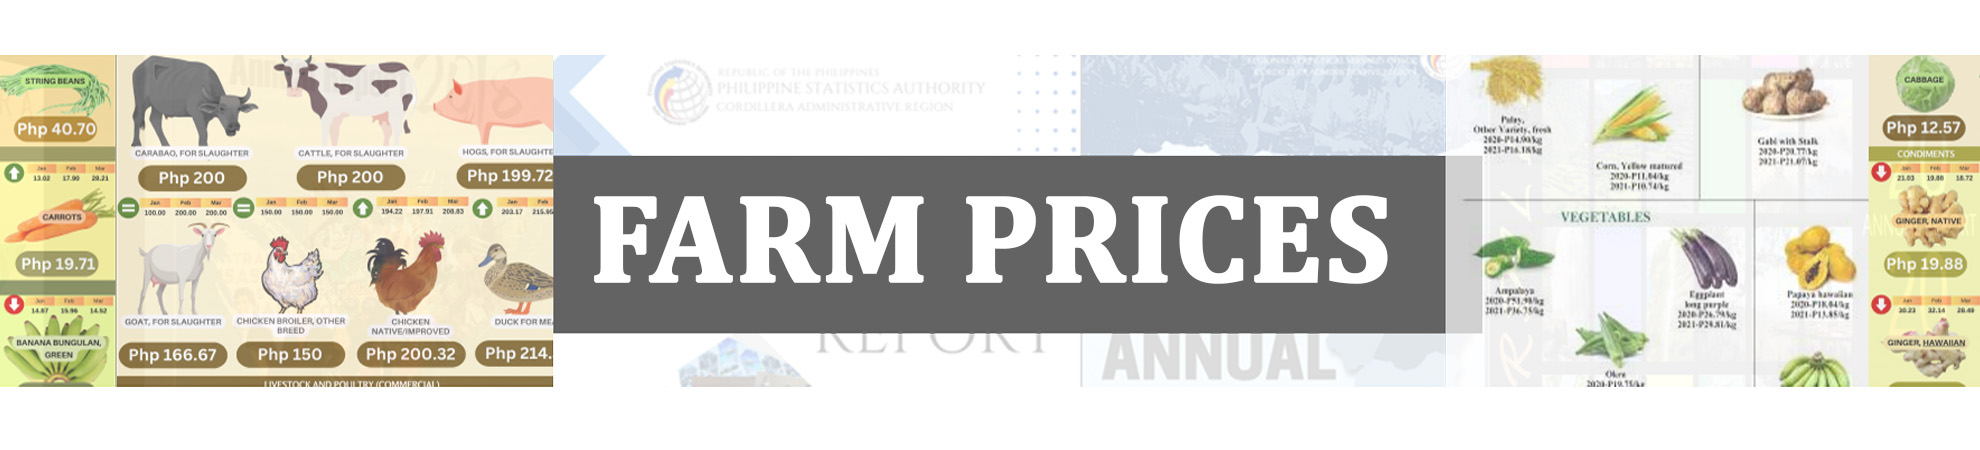 Farm Prices